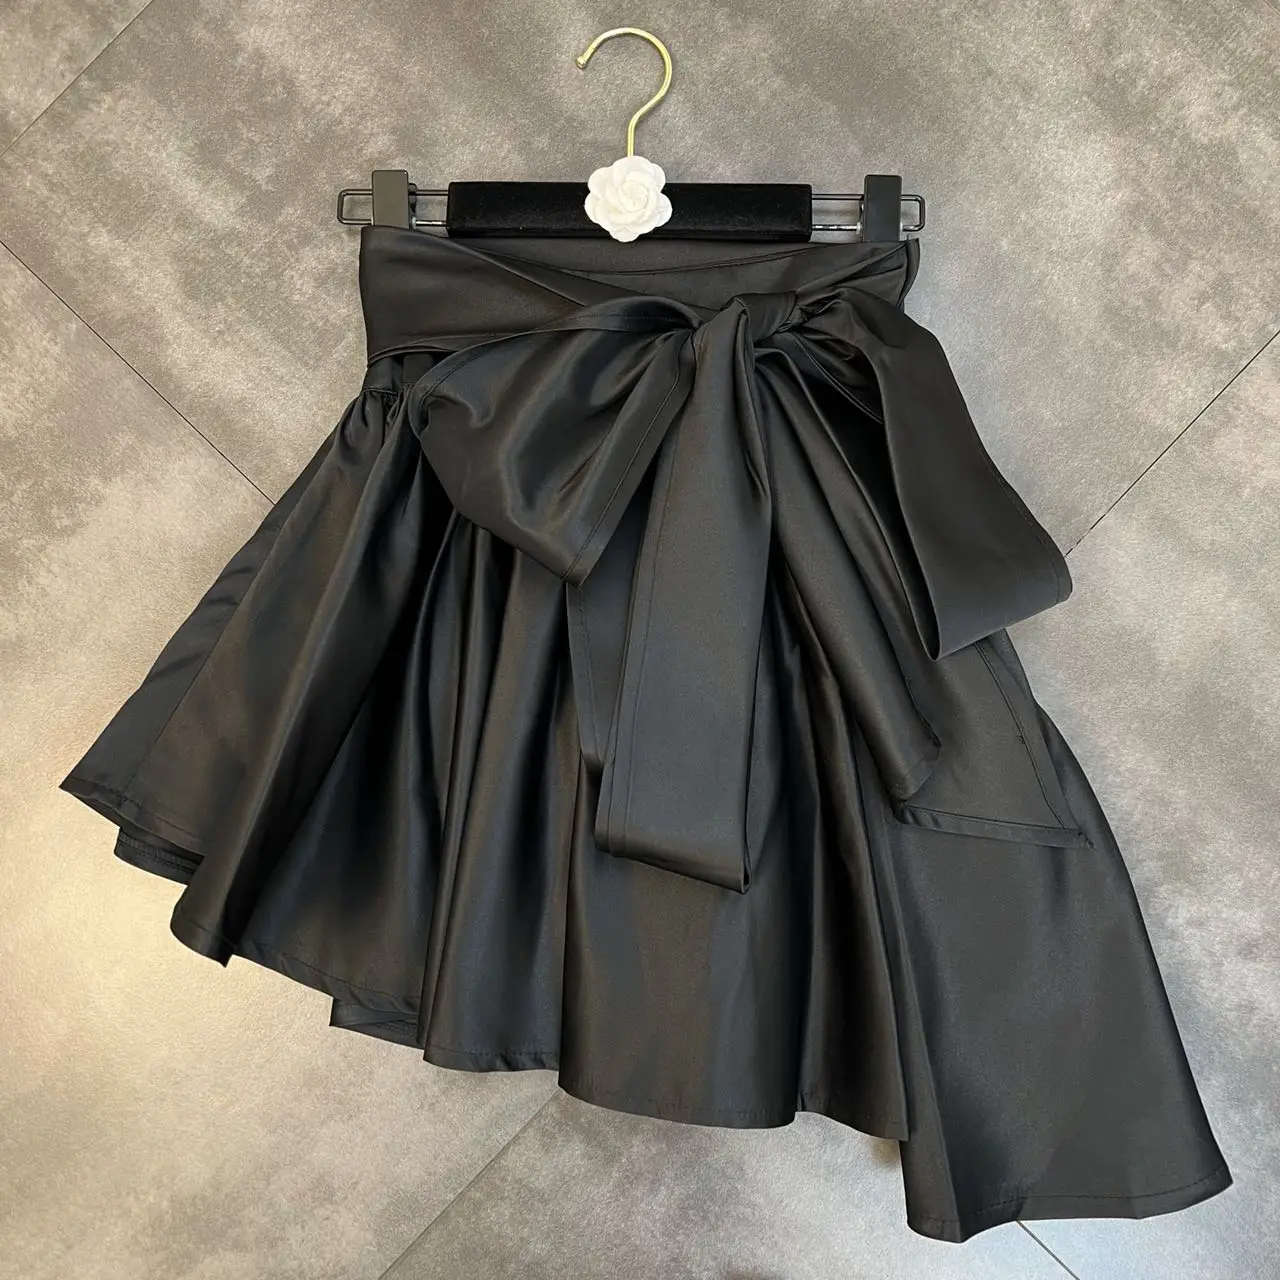 Bow irregular skirt pleated fluffy overskirt fashion overskirt skirts womens's Spring 2022